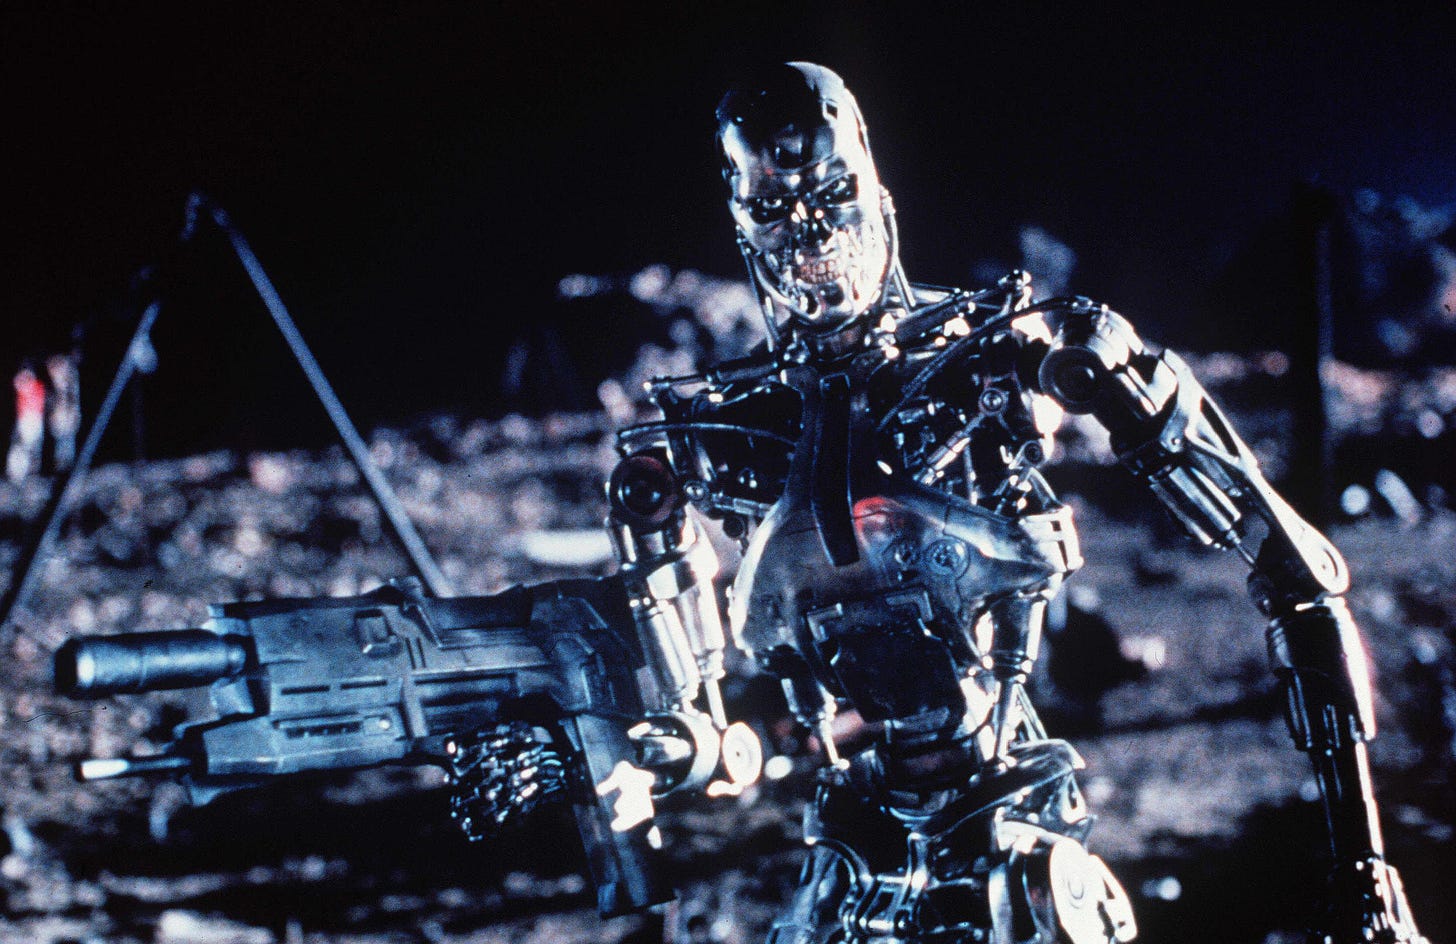 An evil robot from Terminator 2.